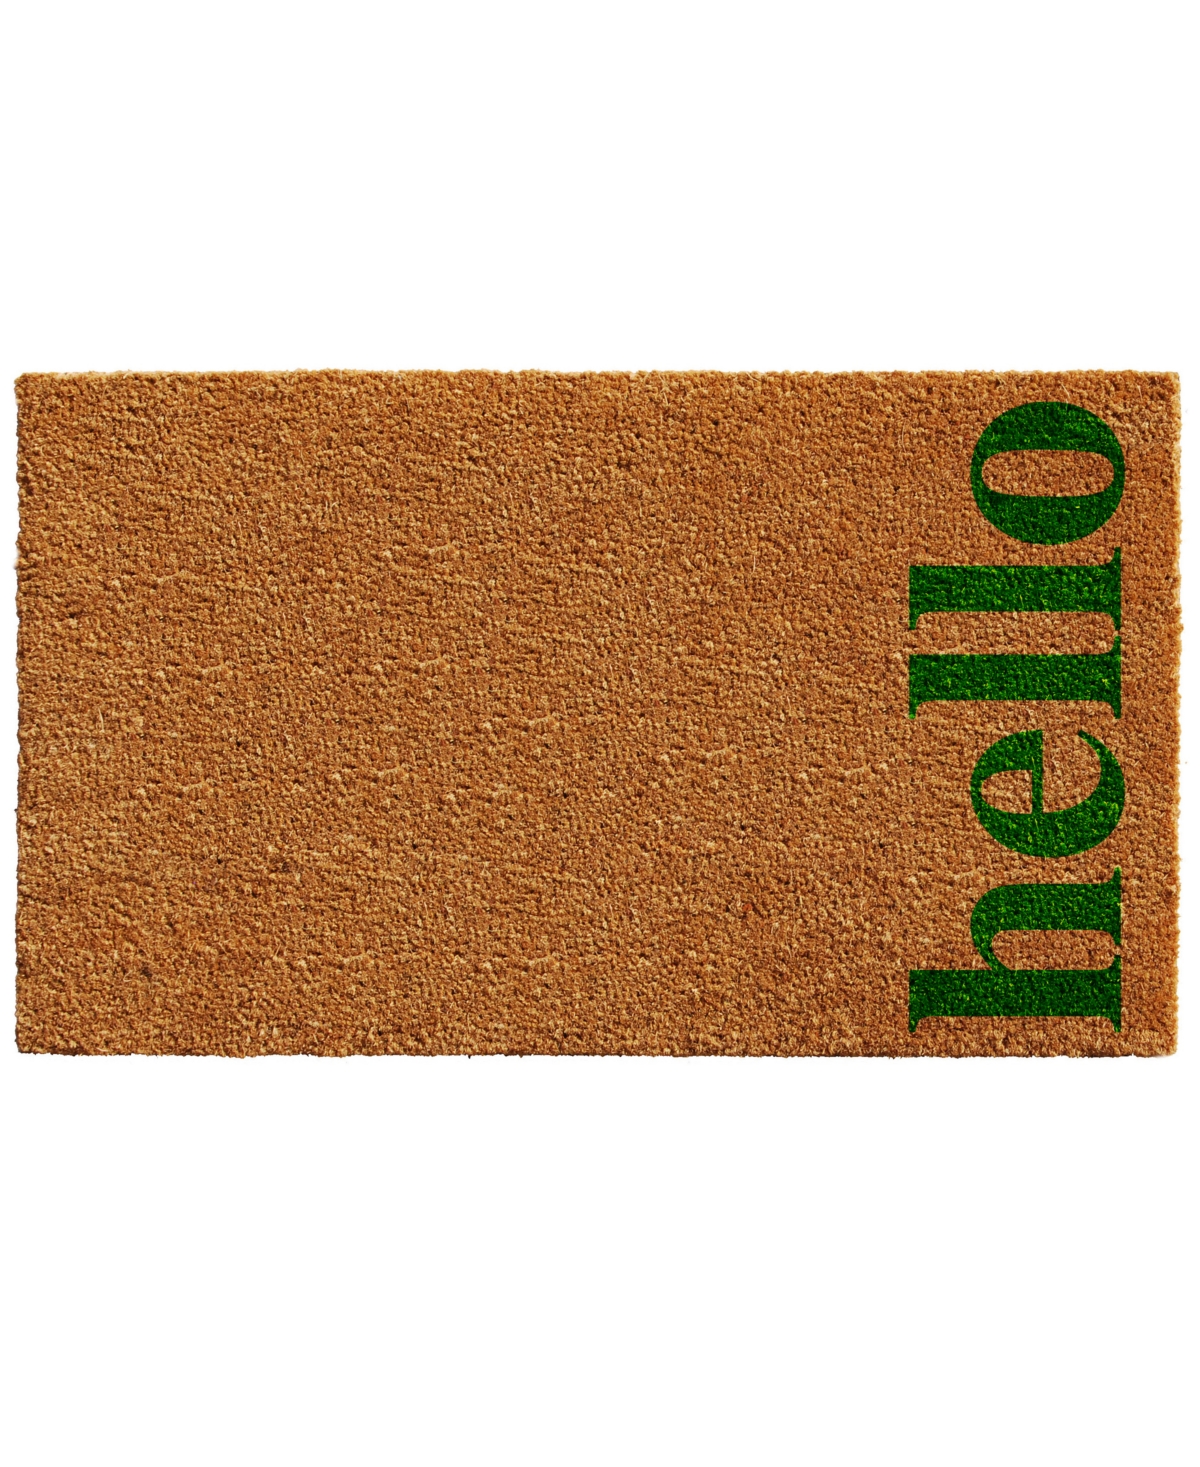 Home & More Vertical Hello Coir/vinyl Doormat, 24" X 36" In Natural,green